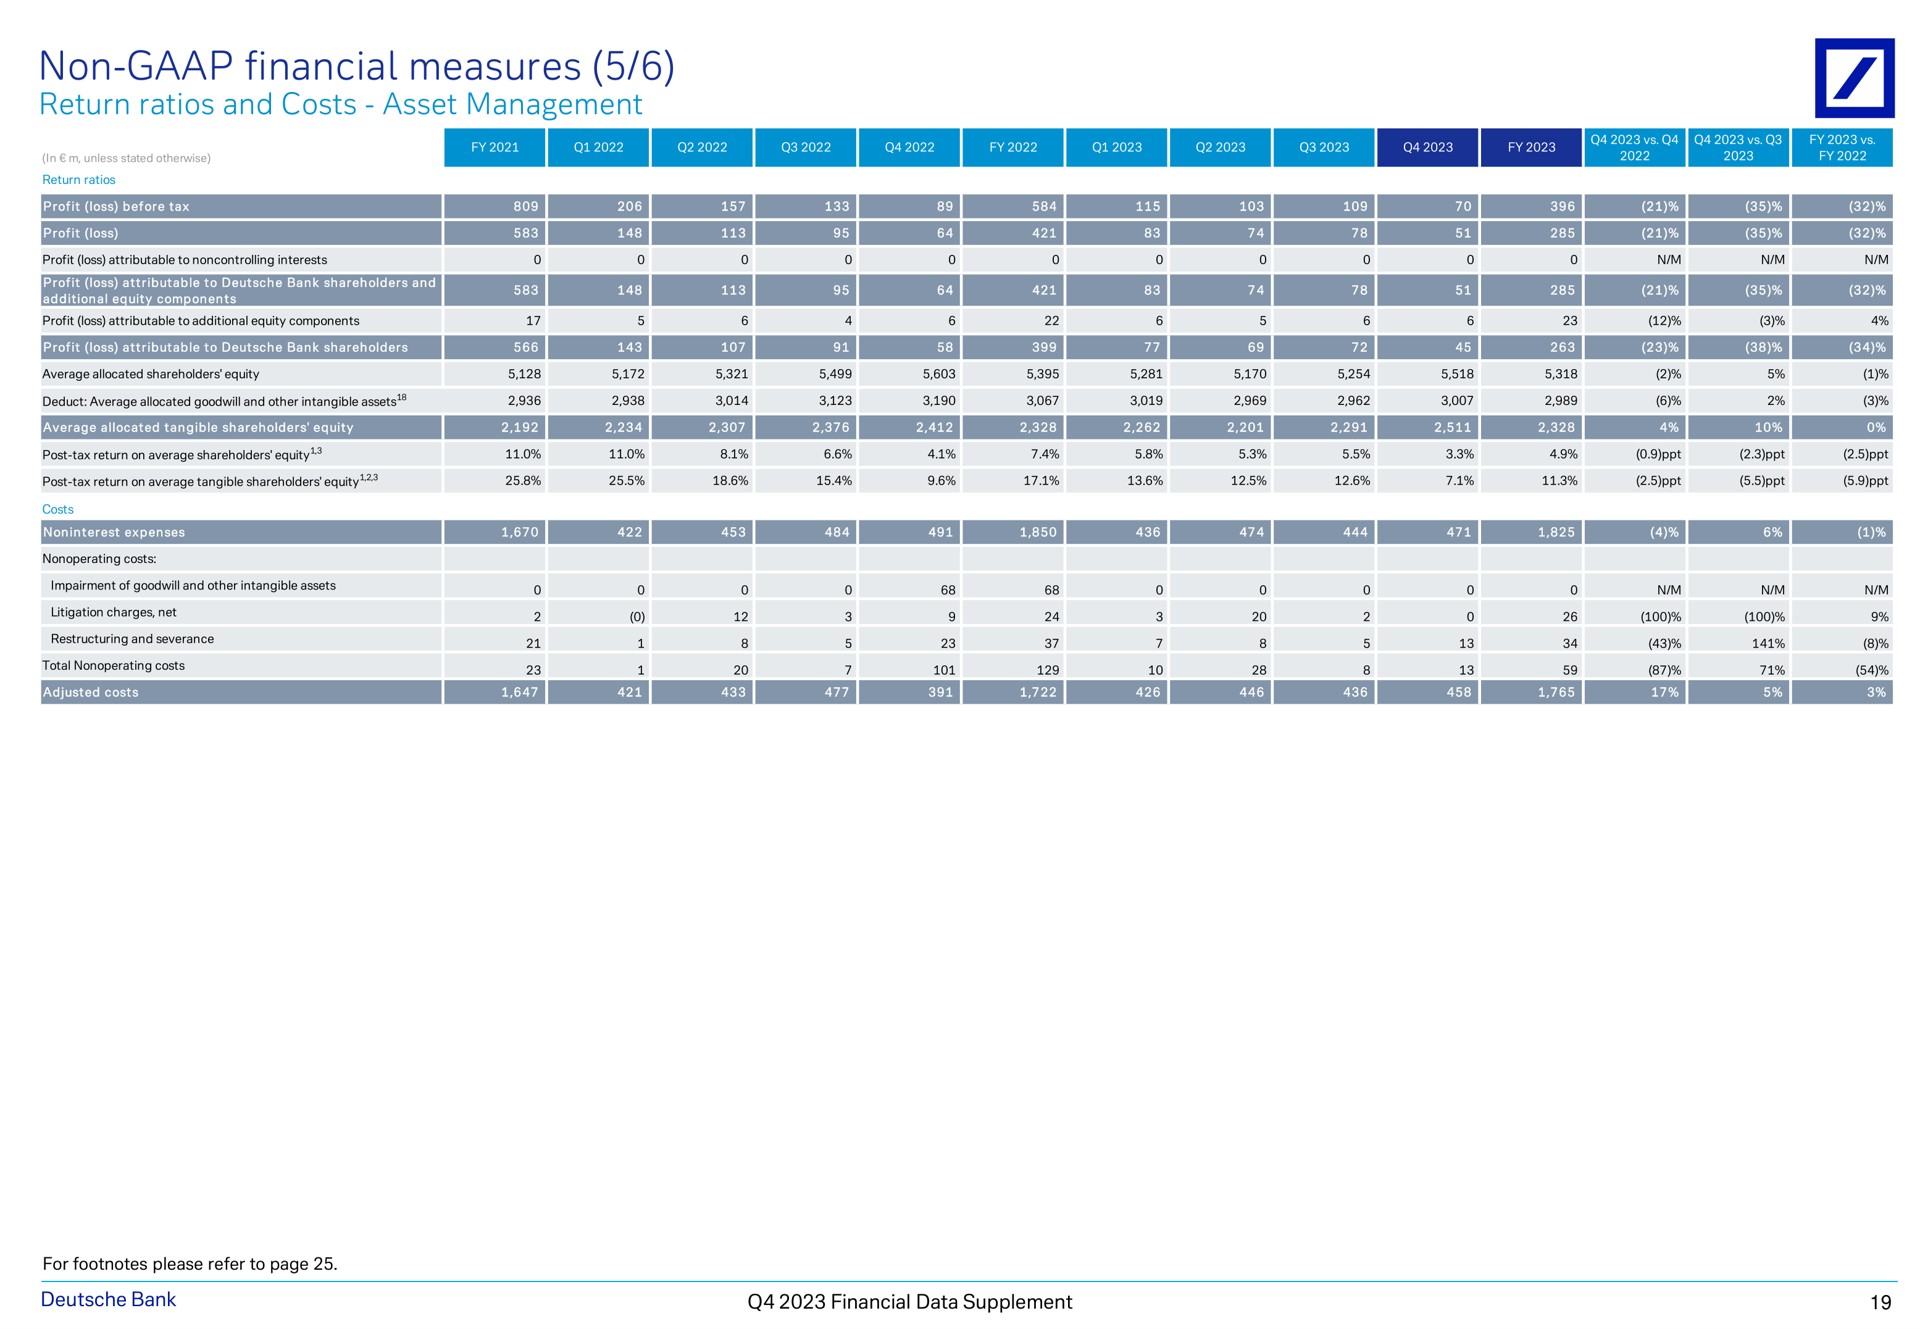 non financial measures return ratios and costs asset management eye a a a nee shea a my bank data supplement | Deutsche Bank